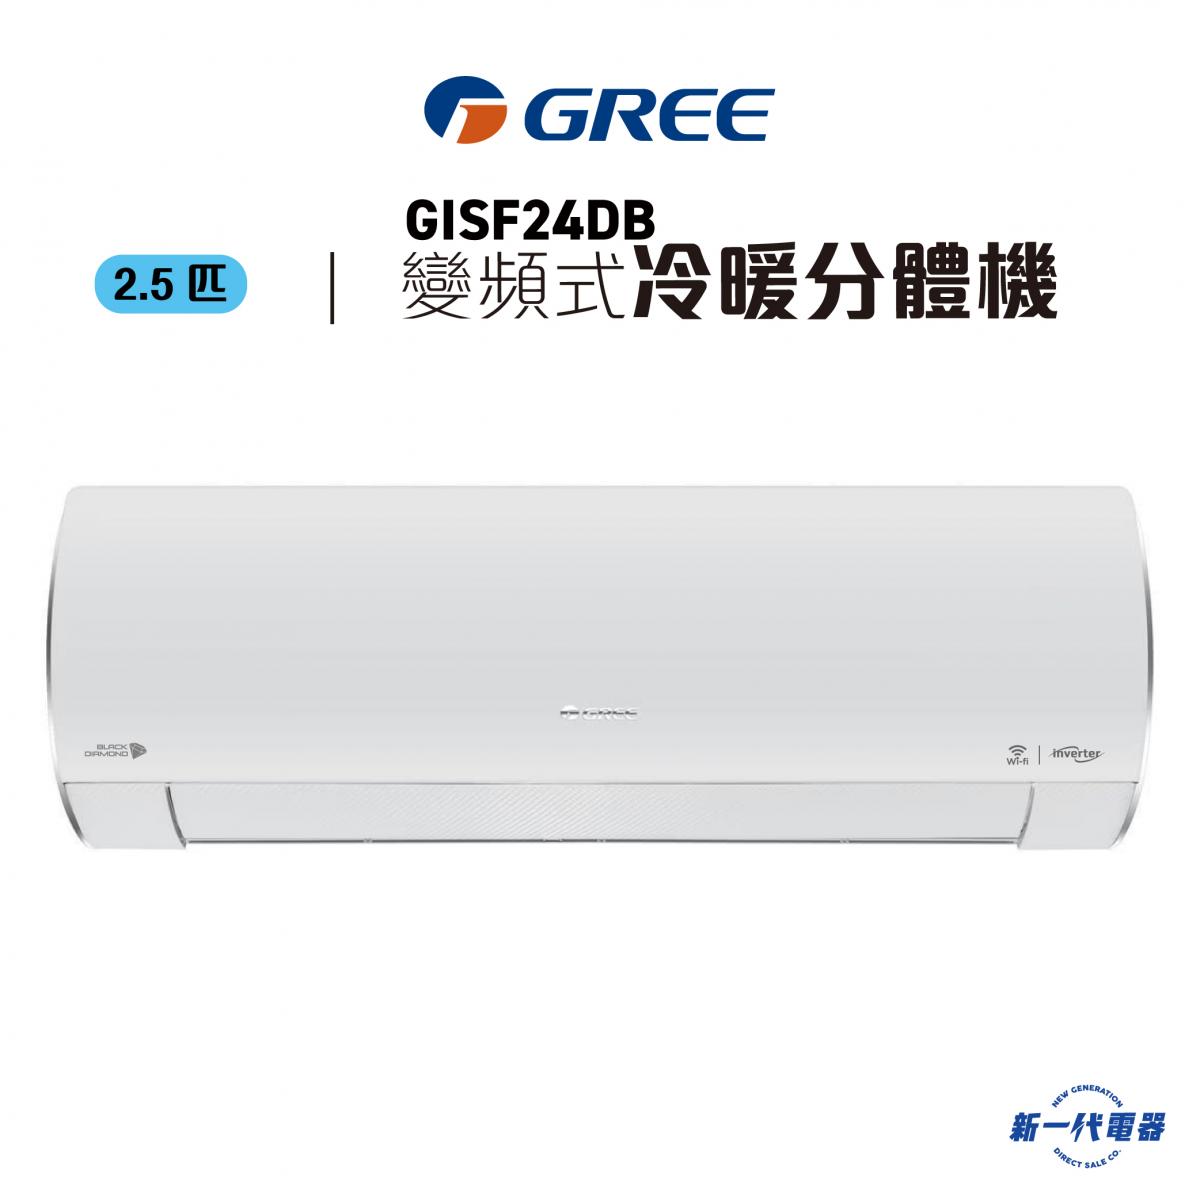 GISF24DB -2.5匹 變頻冷暖掛牆分體式冷氣機